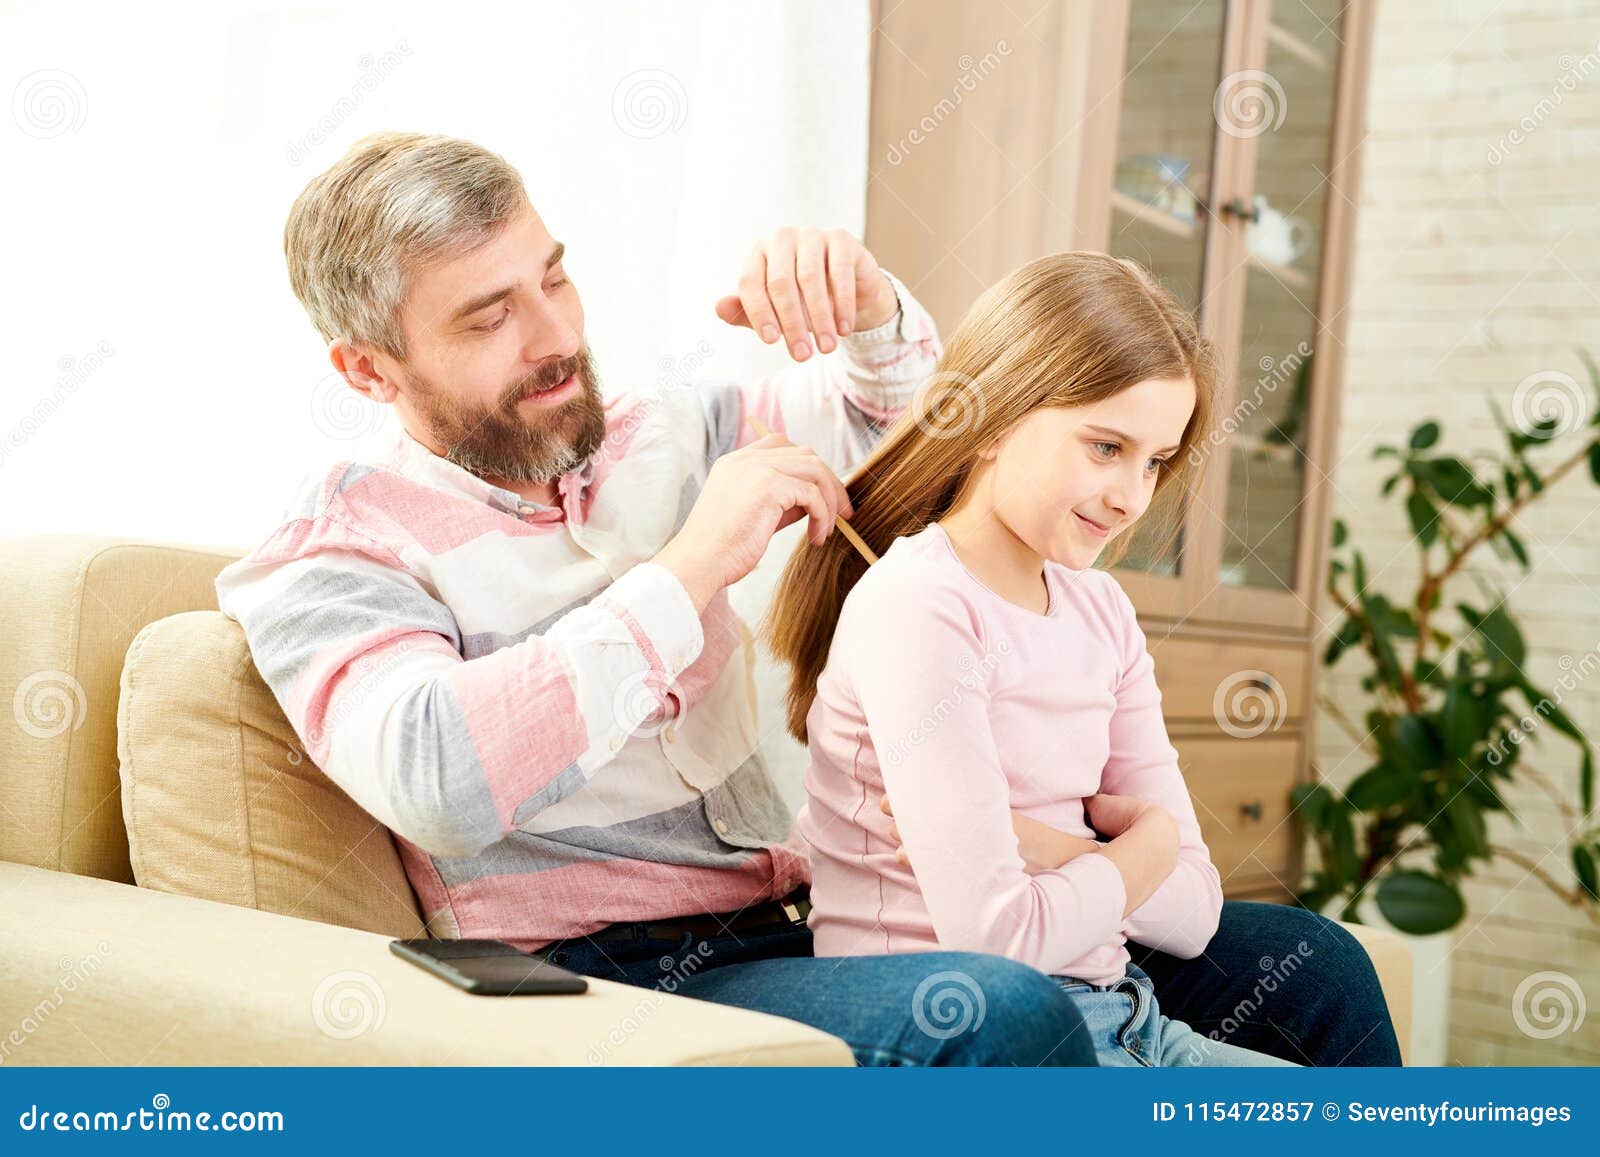 Отец и дочь волосы. Папа причесывает дочку. Папа расчесывает дочку. Отец причесывает волосы дочери. Отец расчесывает волосы дочери.